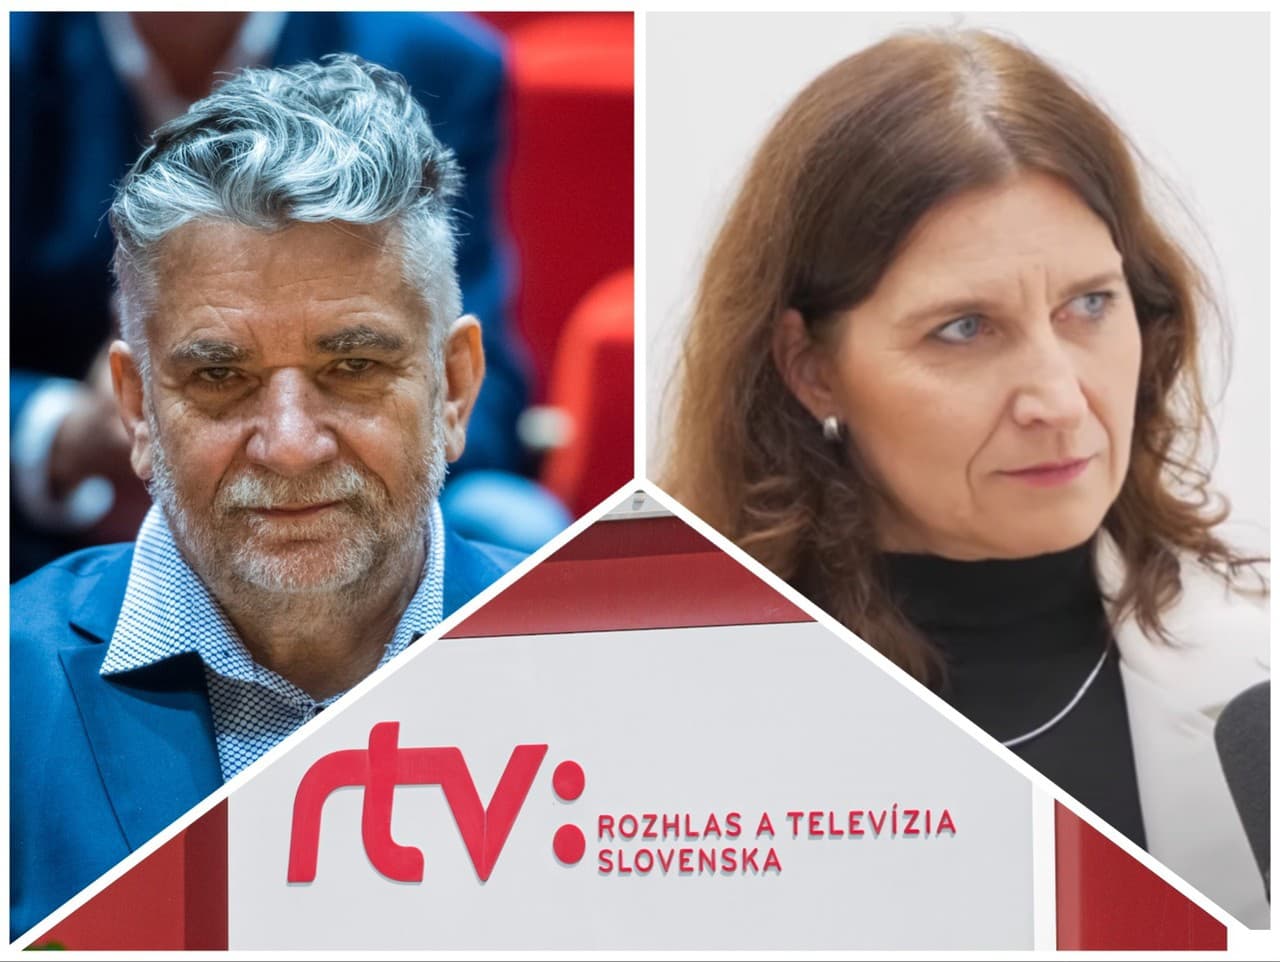 SNS Ľuboša Machaja vyzýva, aby odvolal Miriam Kittler z postu konateľky Médiá RTVS